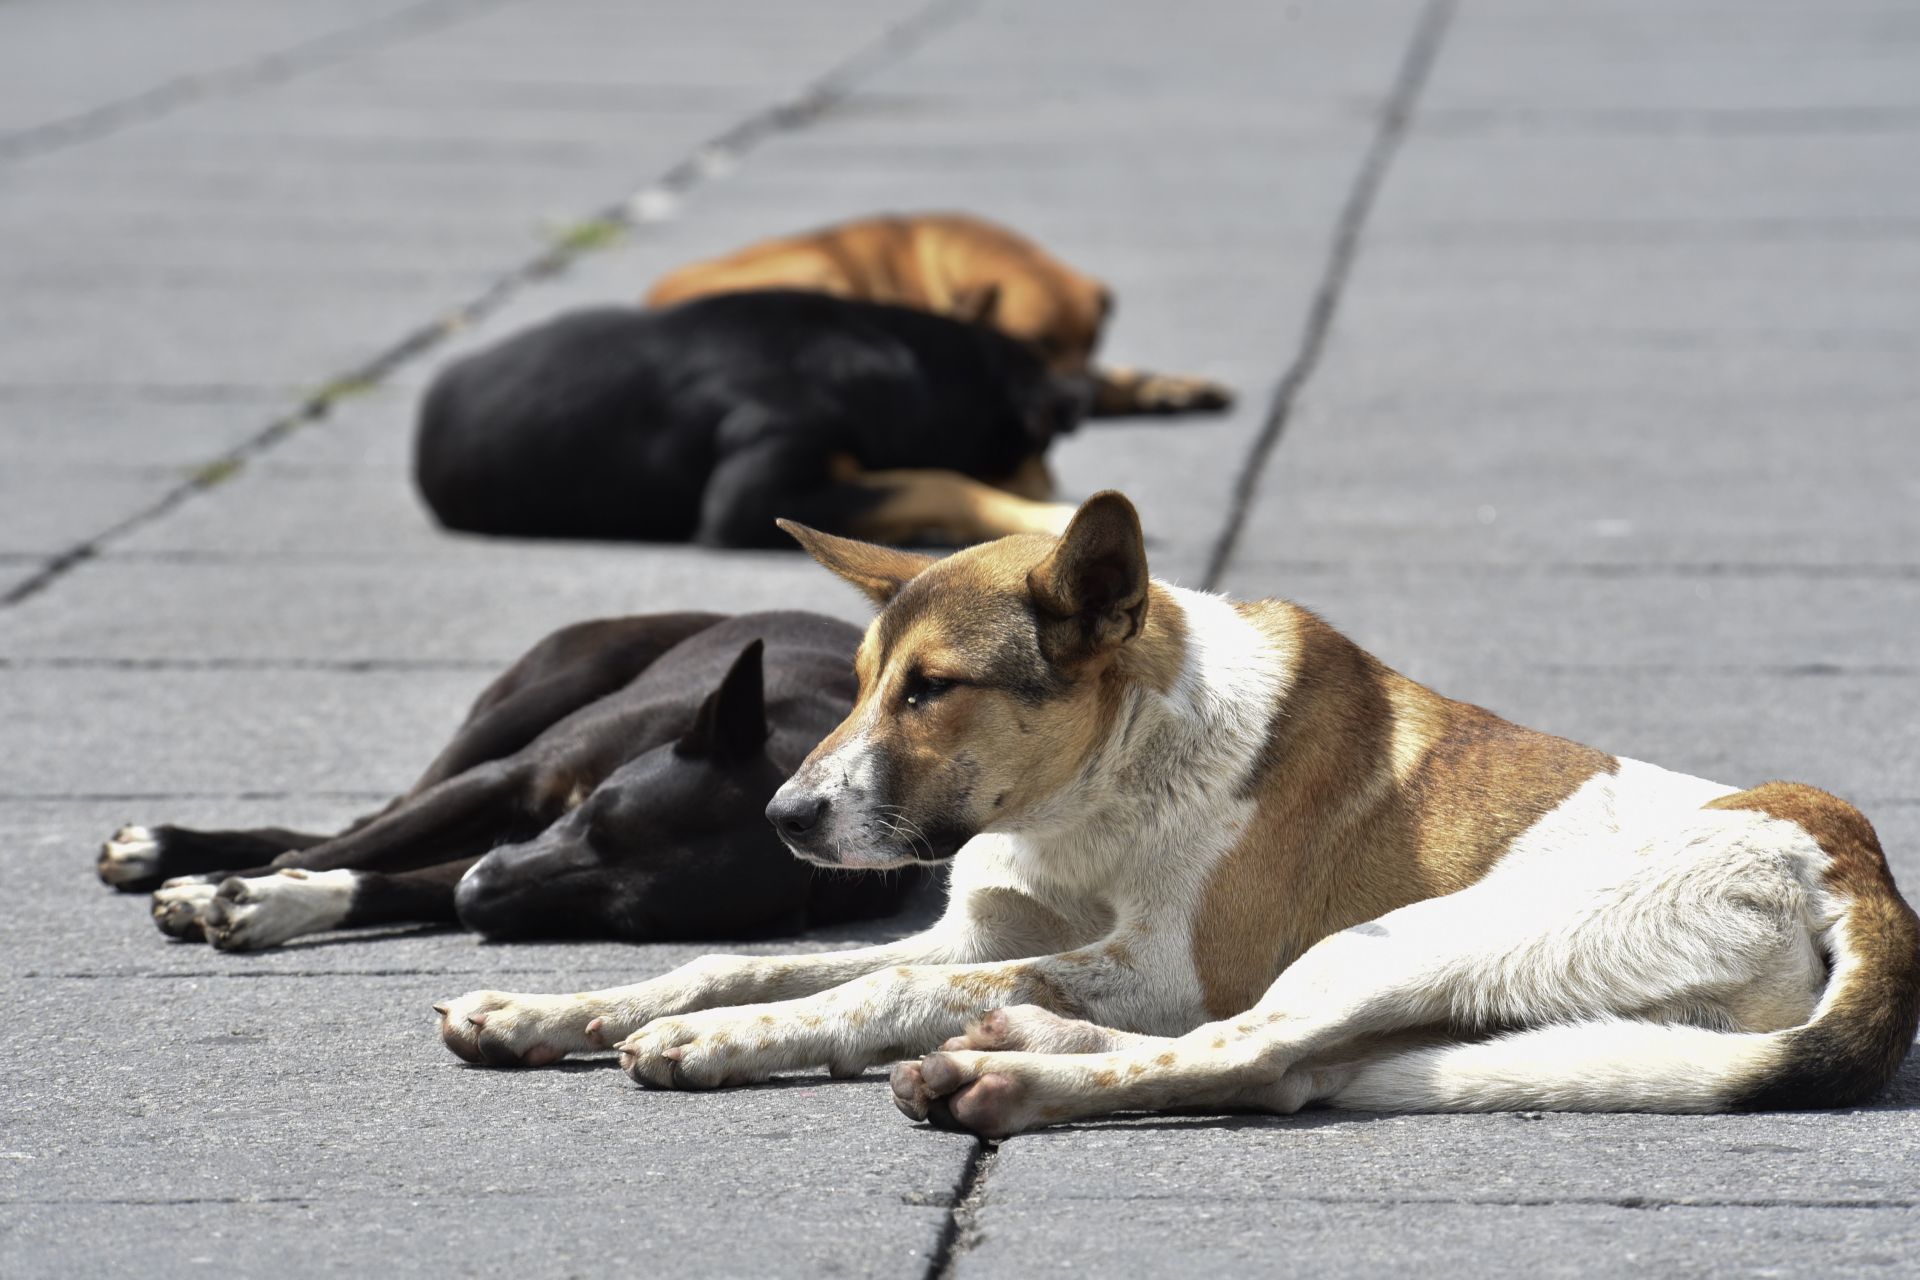 Colectivos de Xochimilco denunciaron una presunta orden para matar decenas de perritos abandonados